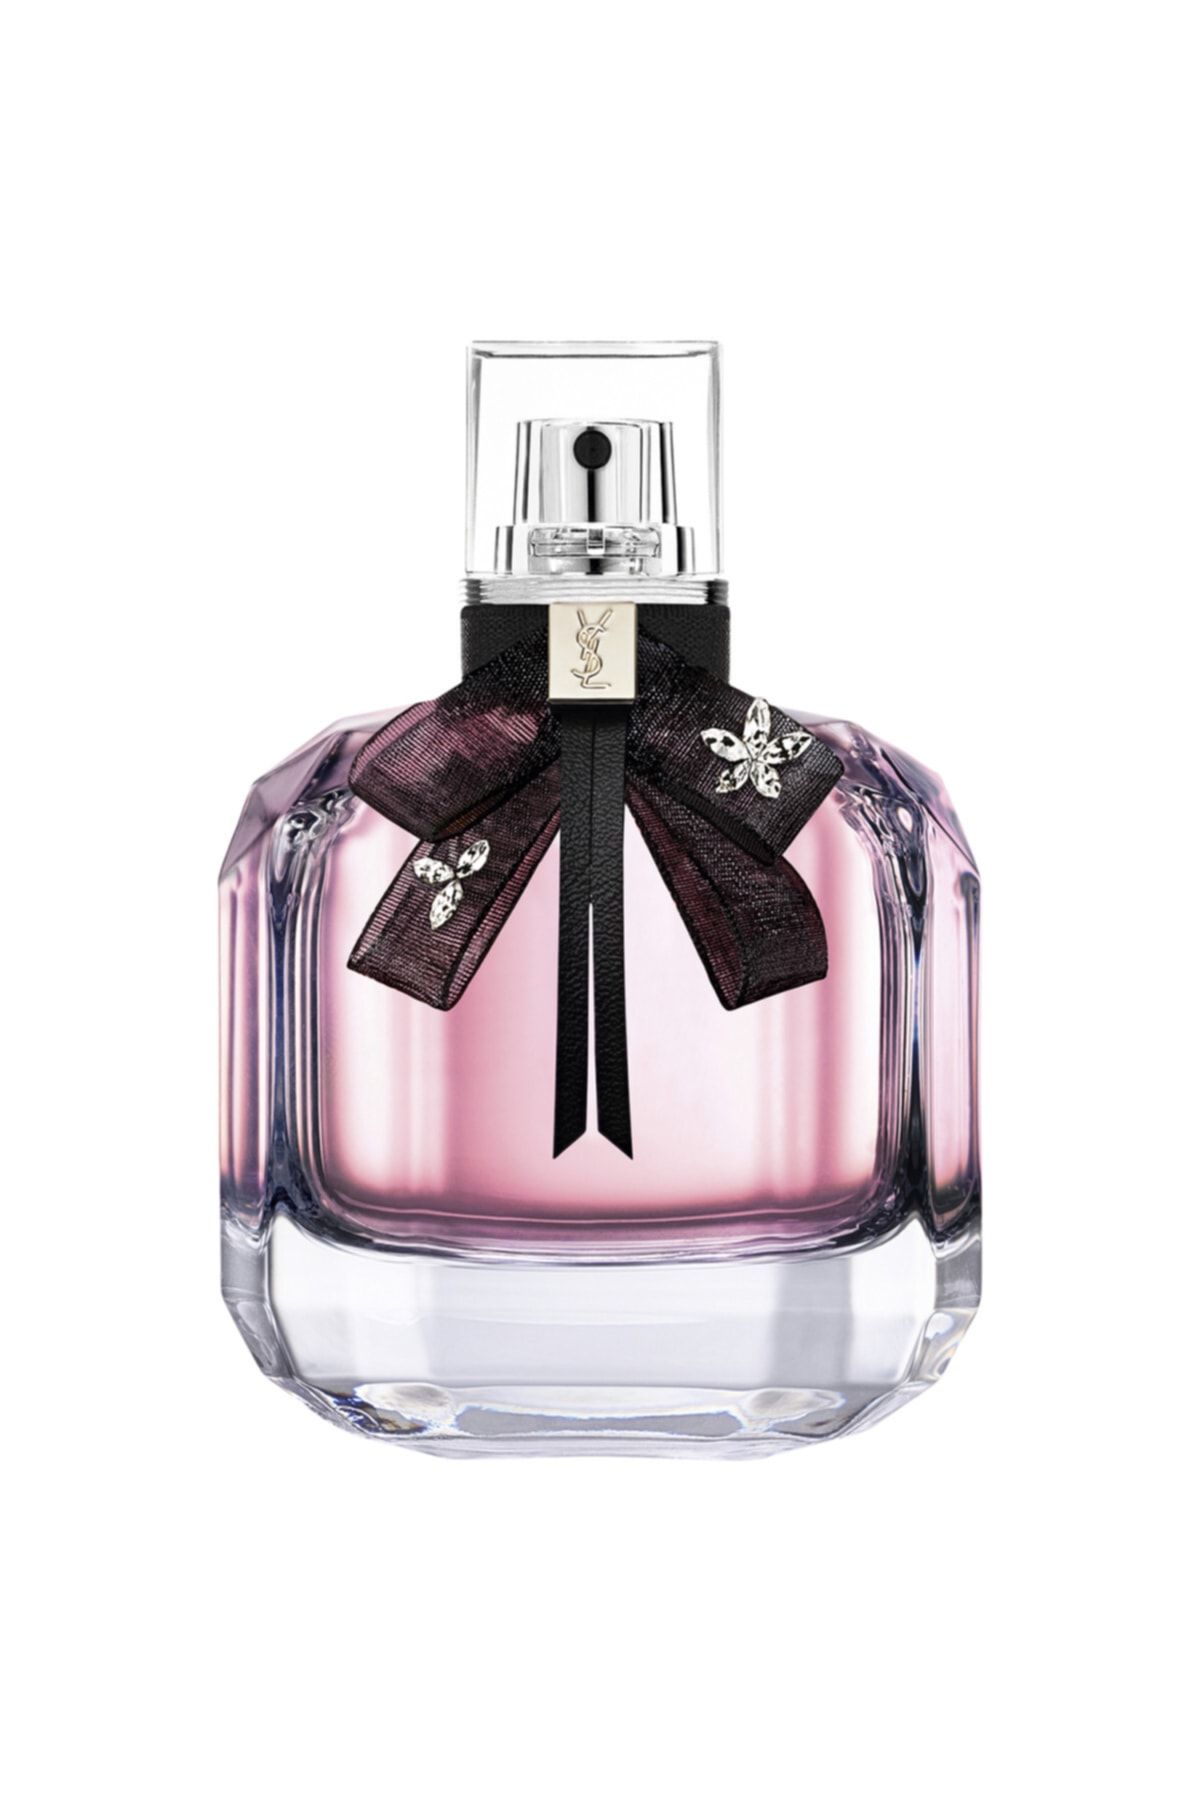 Yves Saint Laurent Mon Paris Floral Eau De Parfum 50 ml 3614272491342